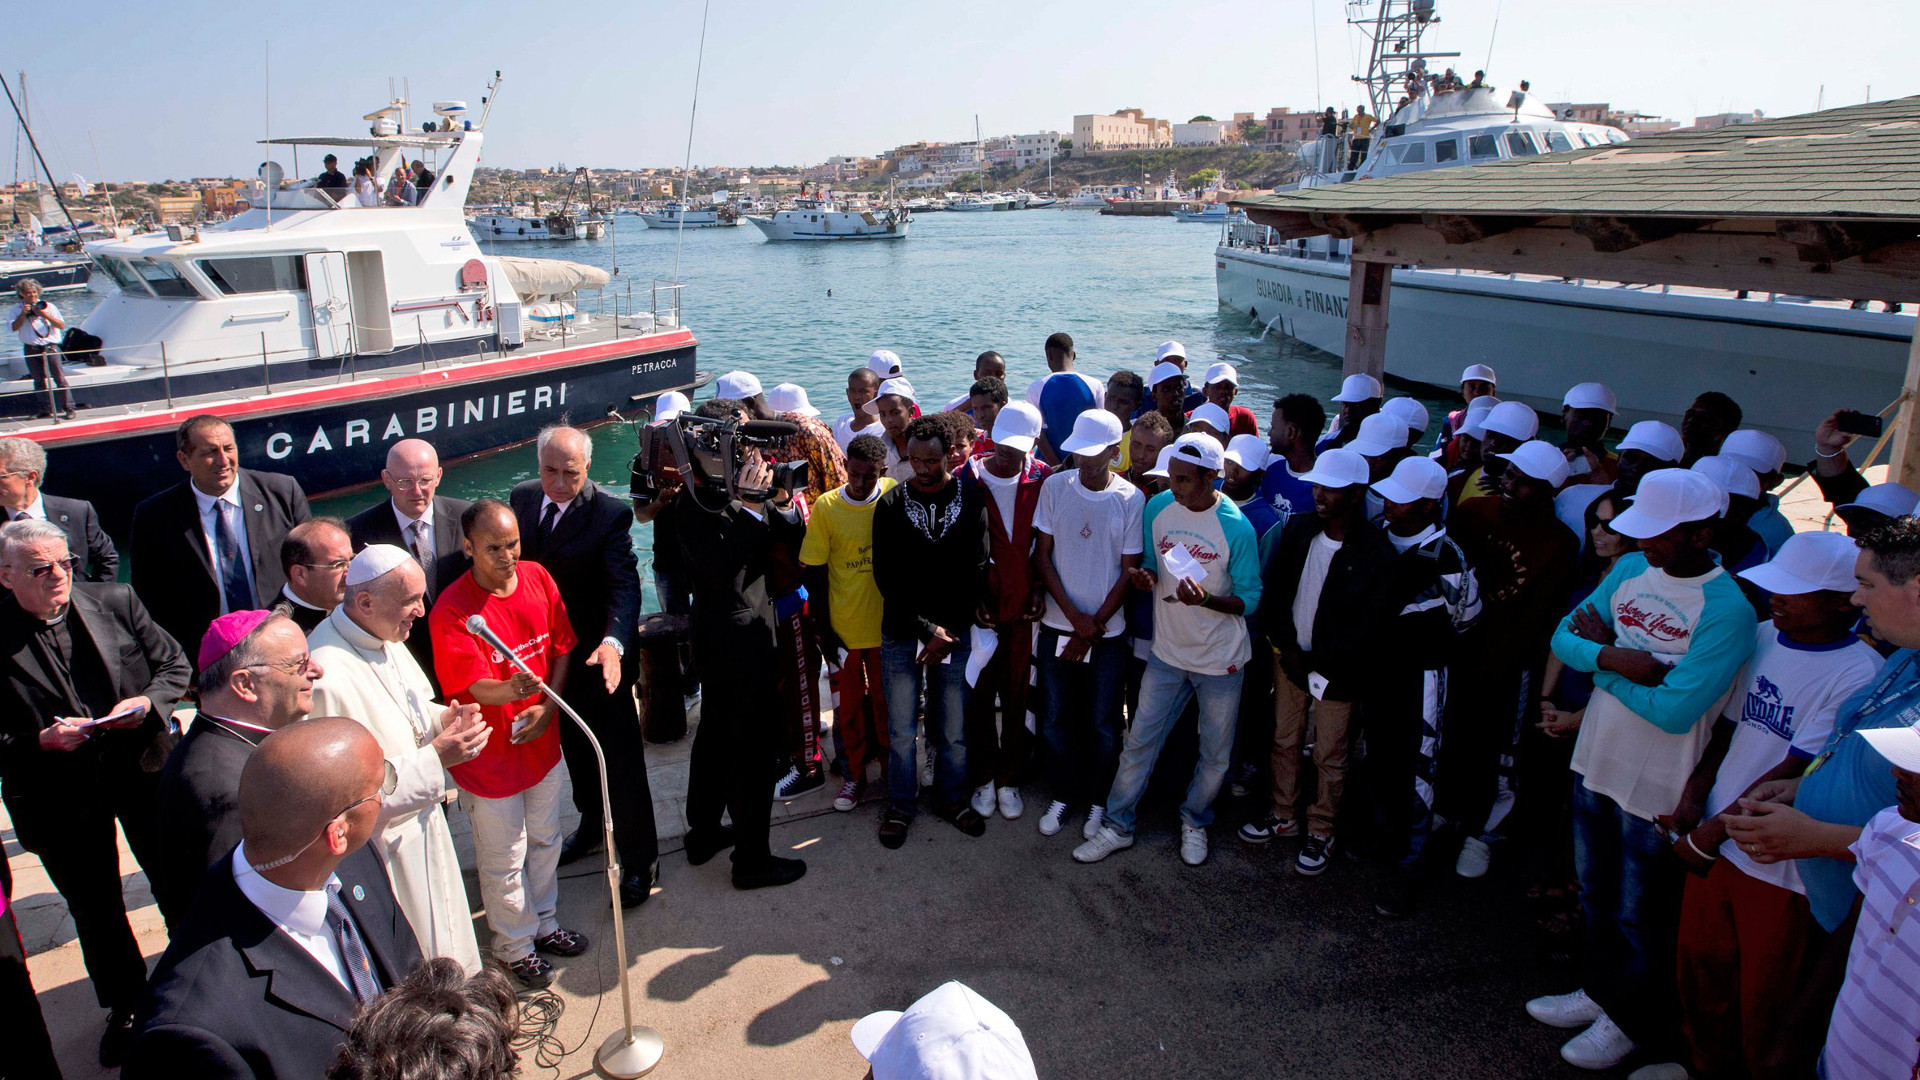 Papst Franziskus besuchte schon am 8. Juli 2013 Lampedusa vor dem verheerenden Unglück am 3. Oktober.